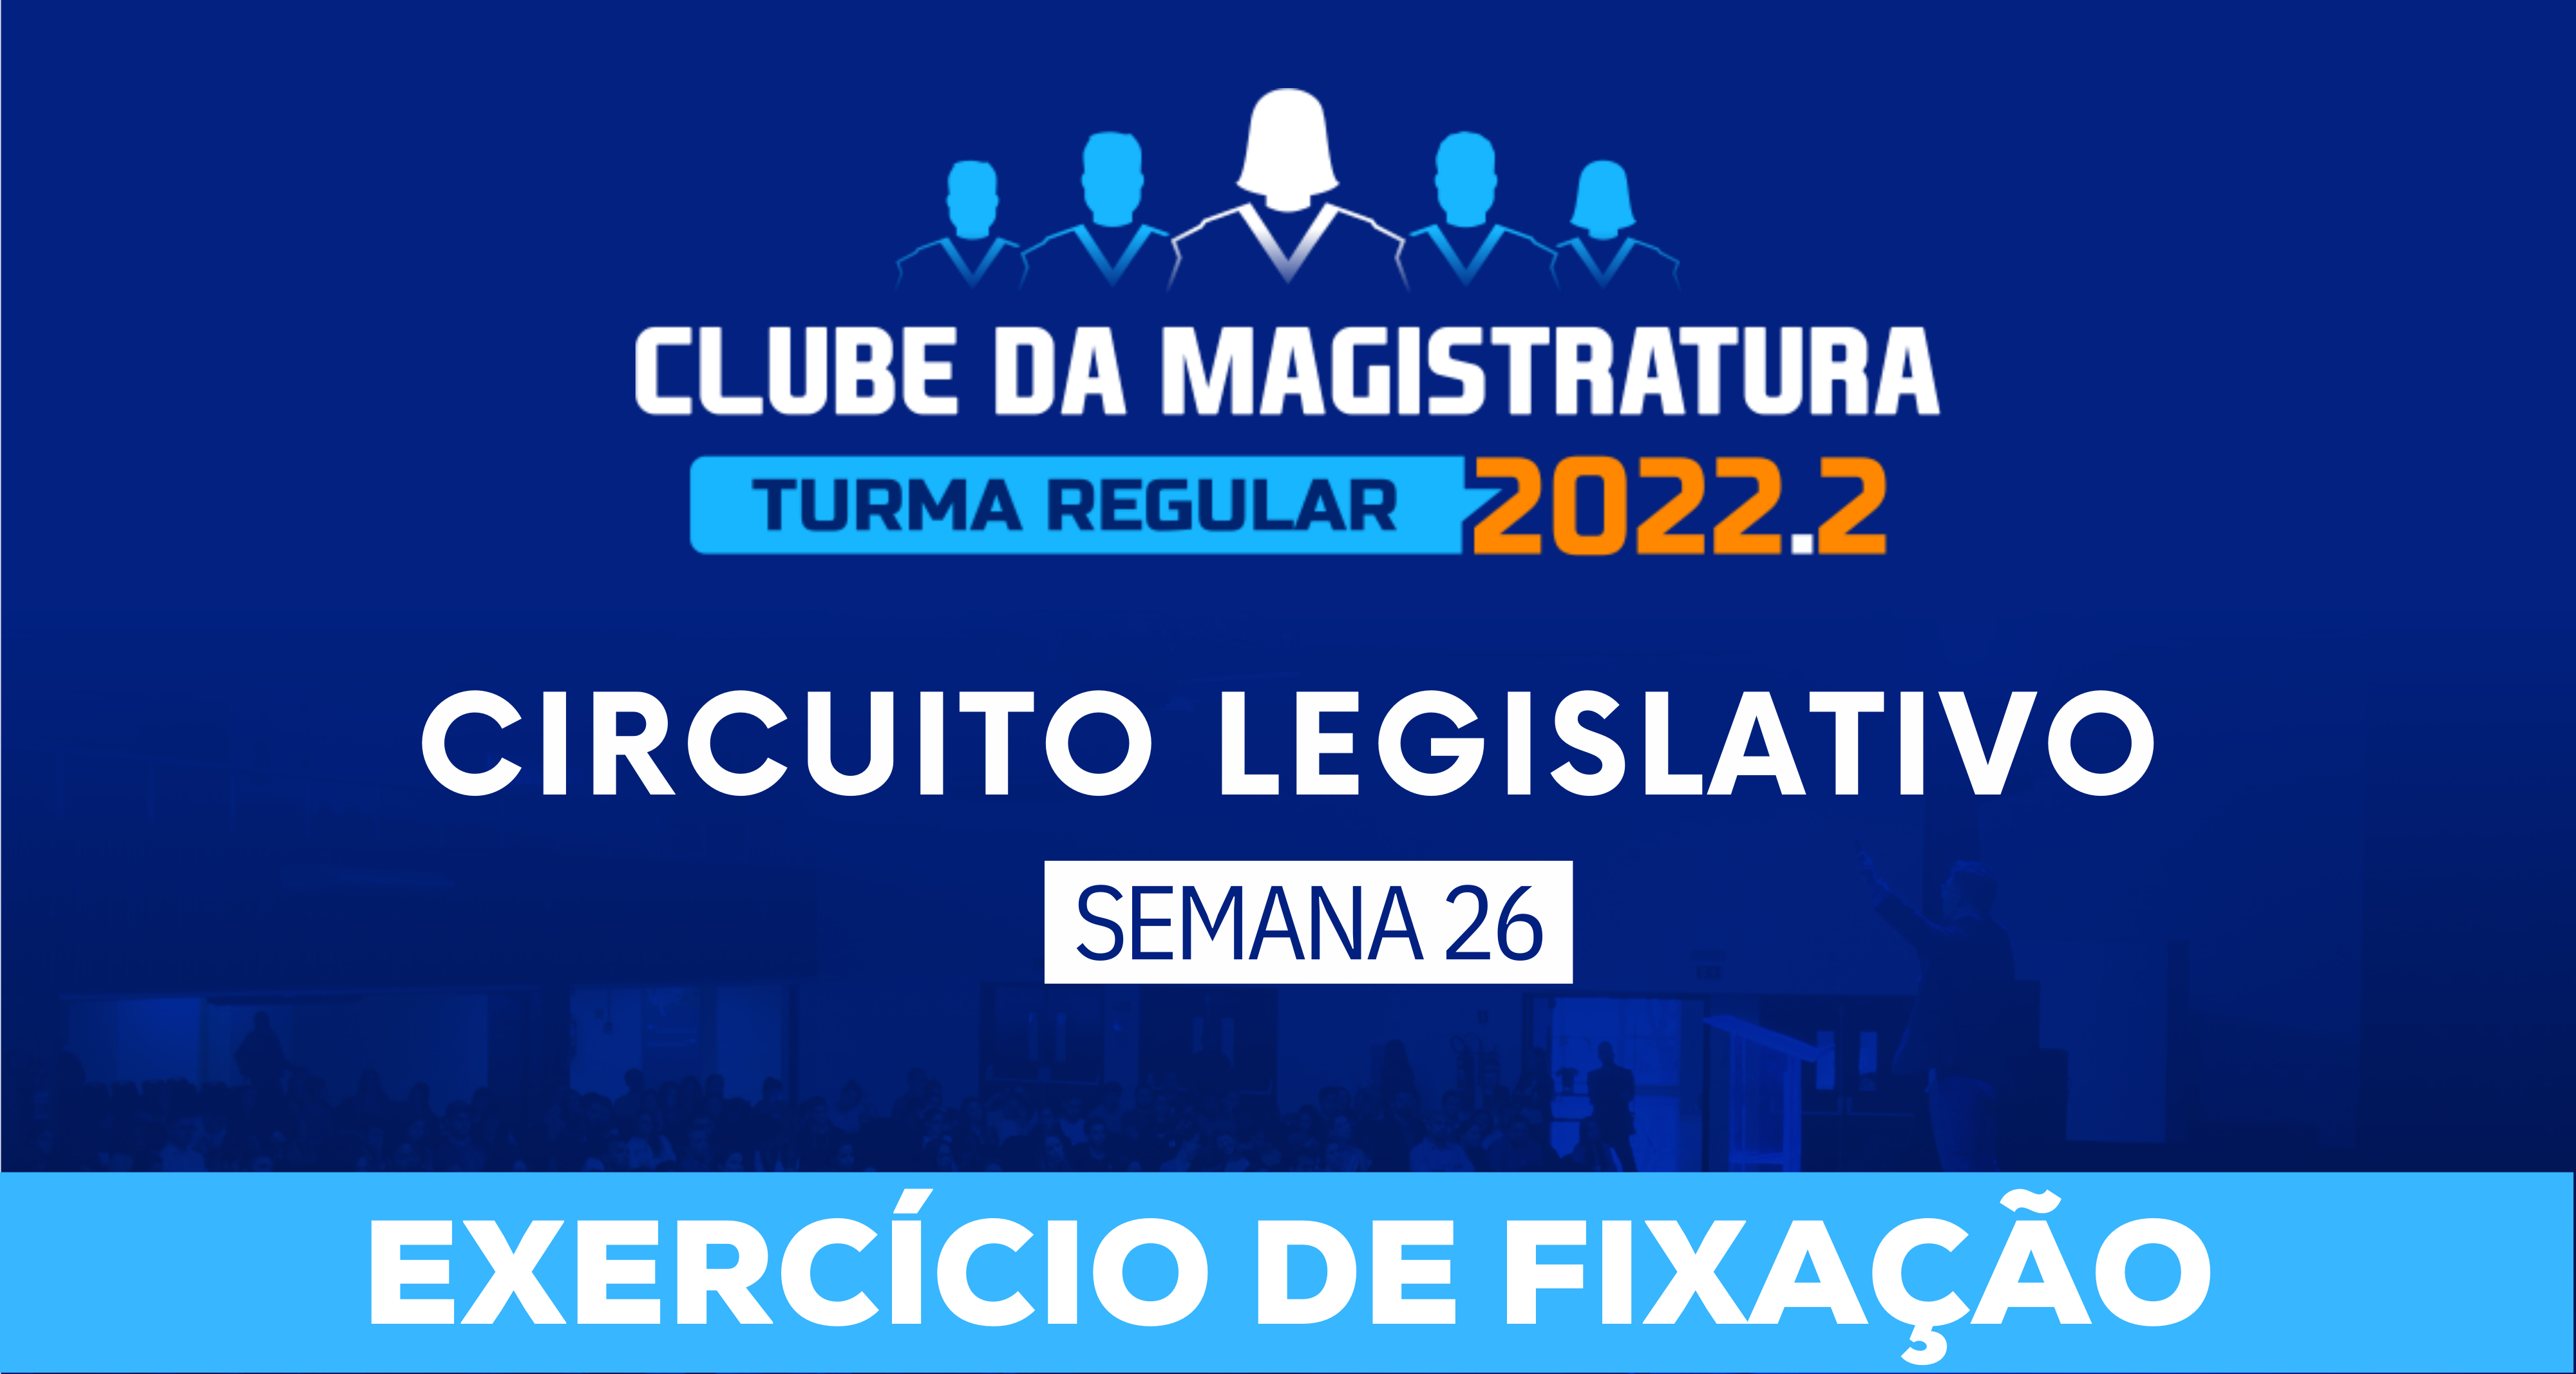 Circuito Legislativo 2022.2 (Clube da Magistratura - Semana 26)